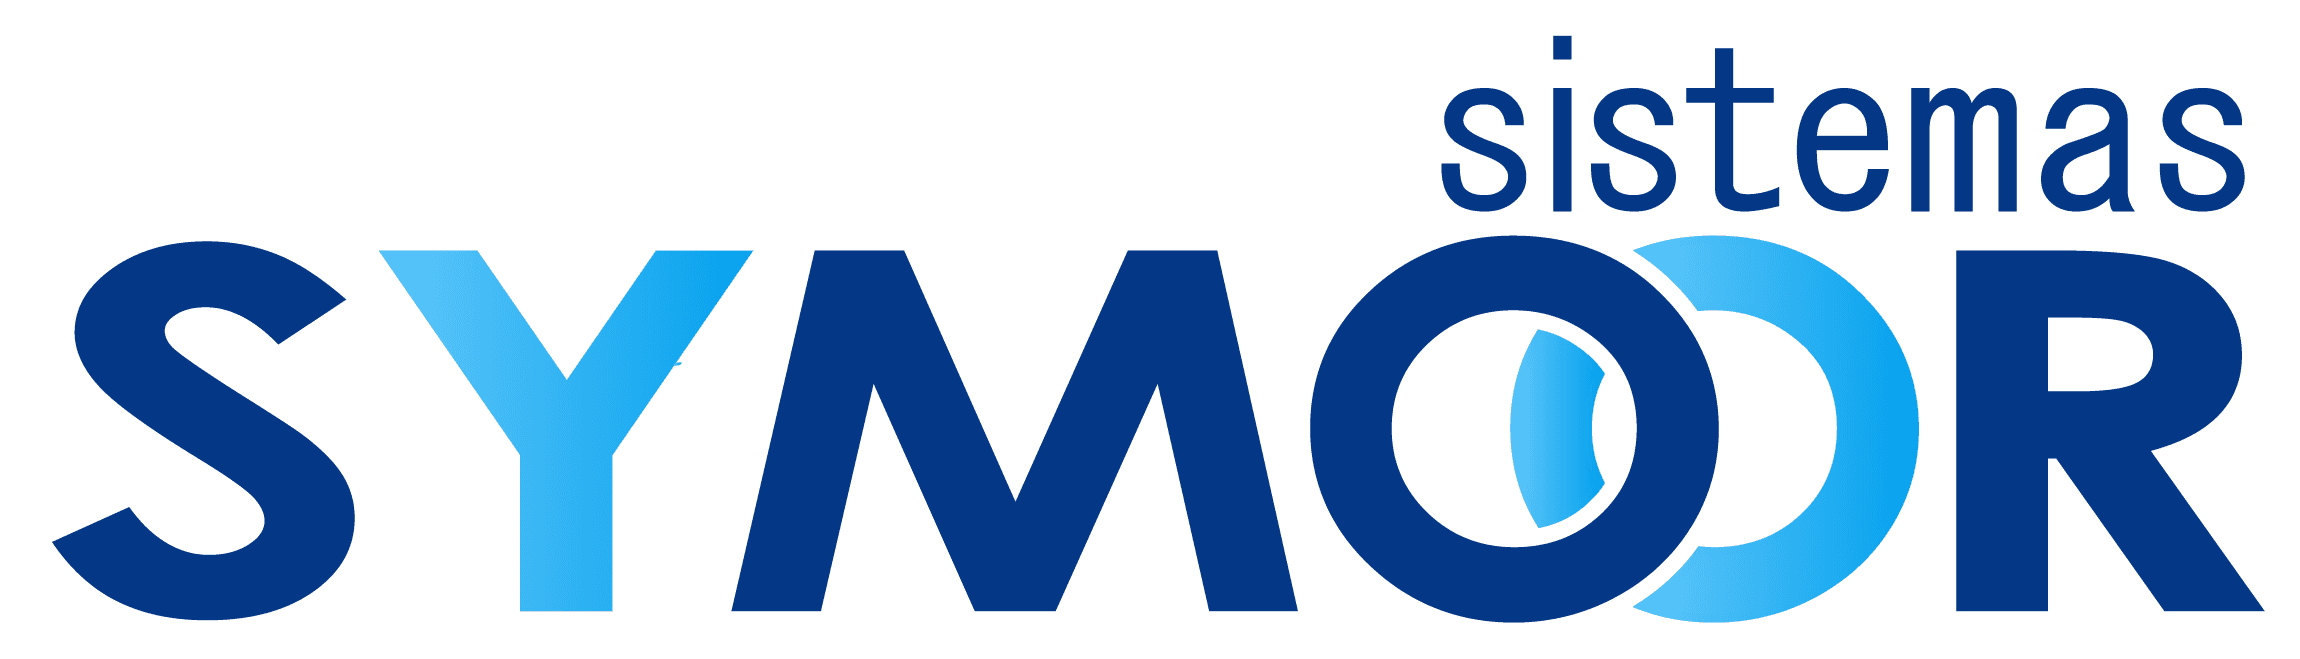 symoor-logo